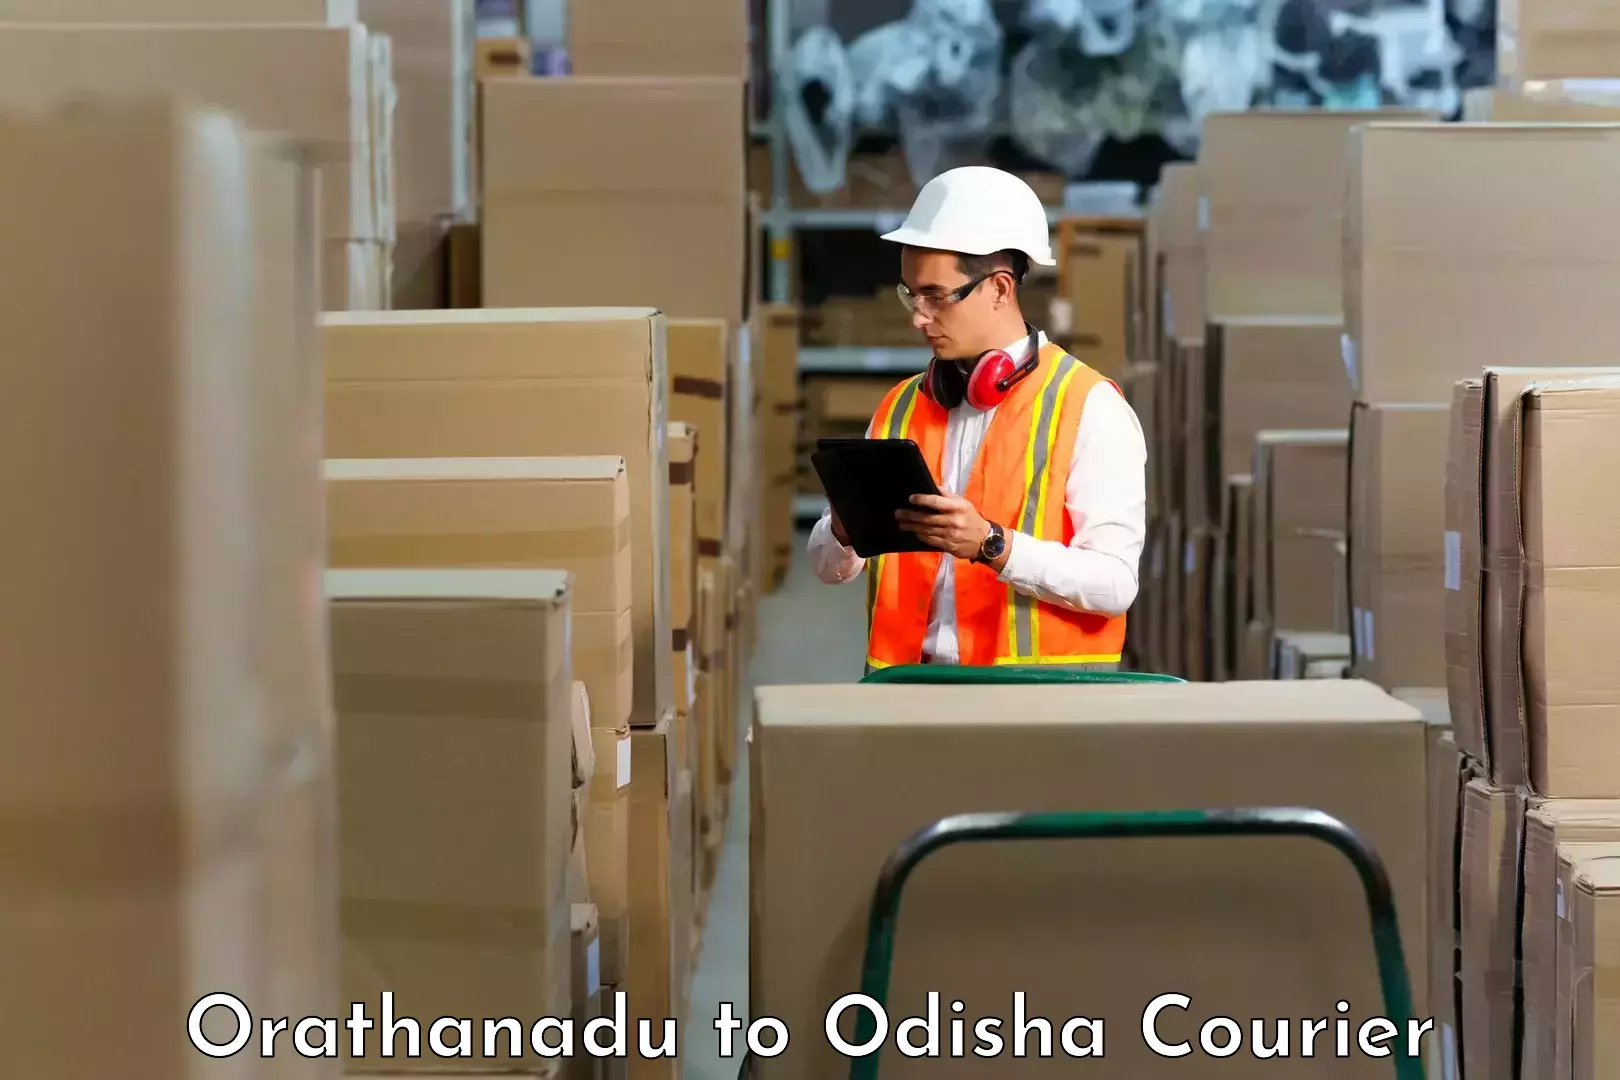 High-speed delivery Orathanadu to Puri